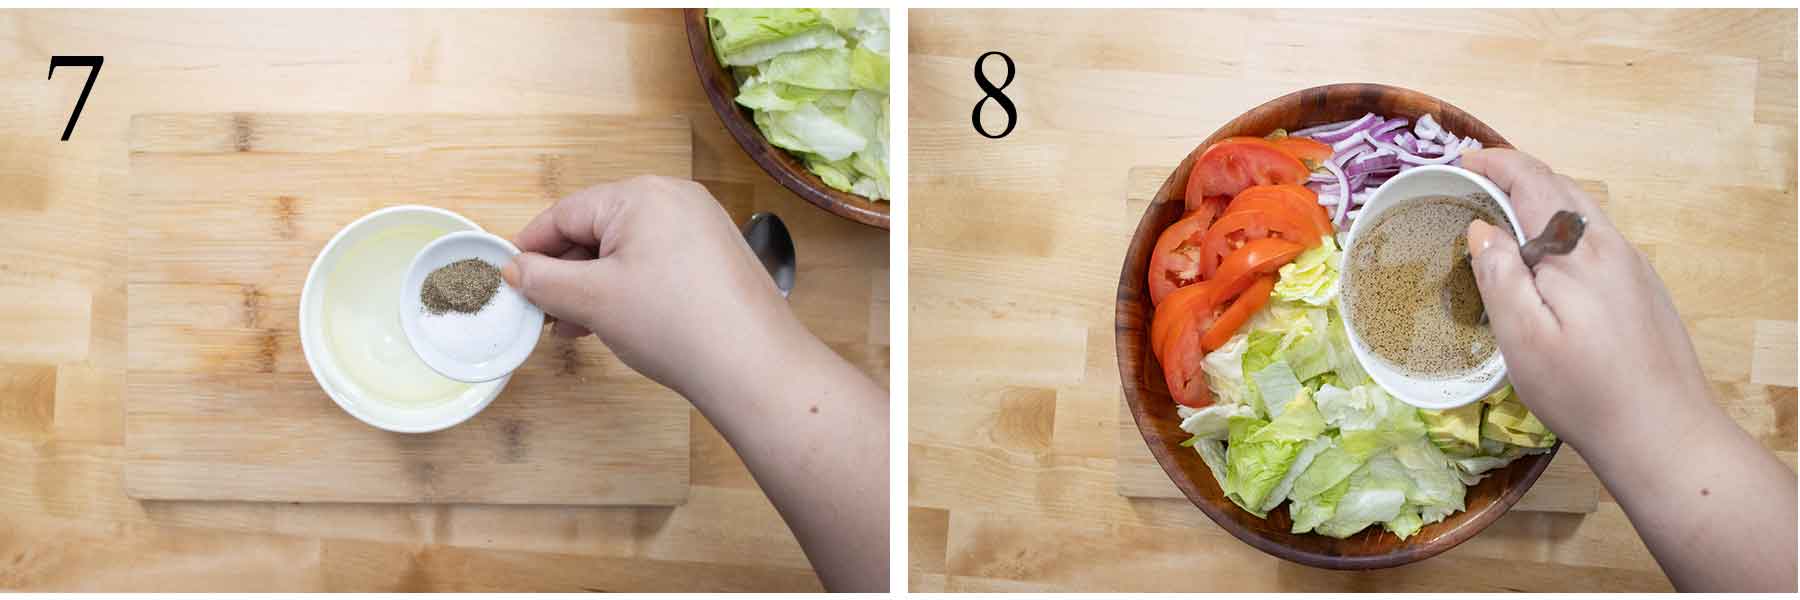 pasos 7 y 8 de como se hace una simple ensalada verde.